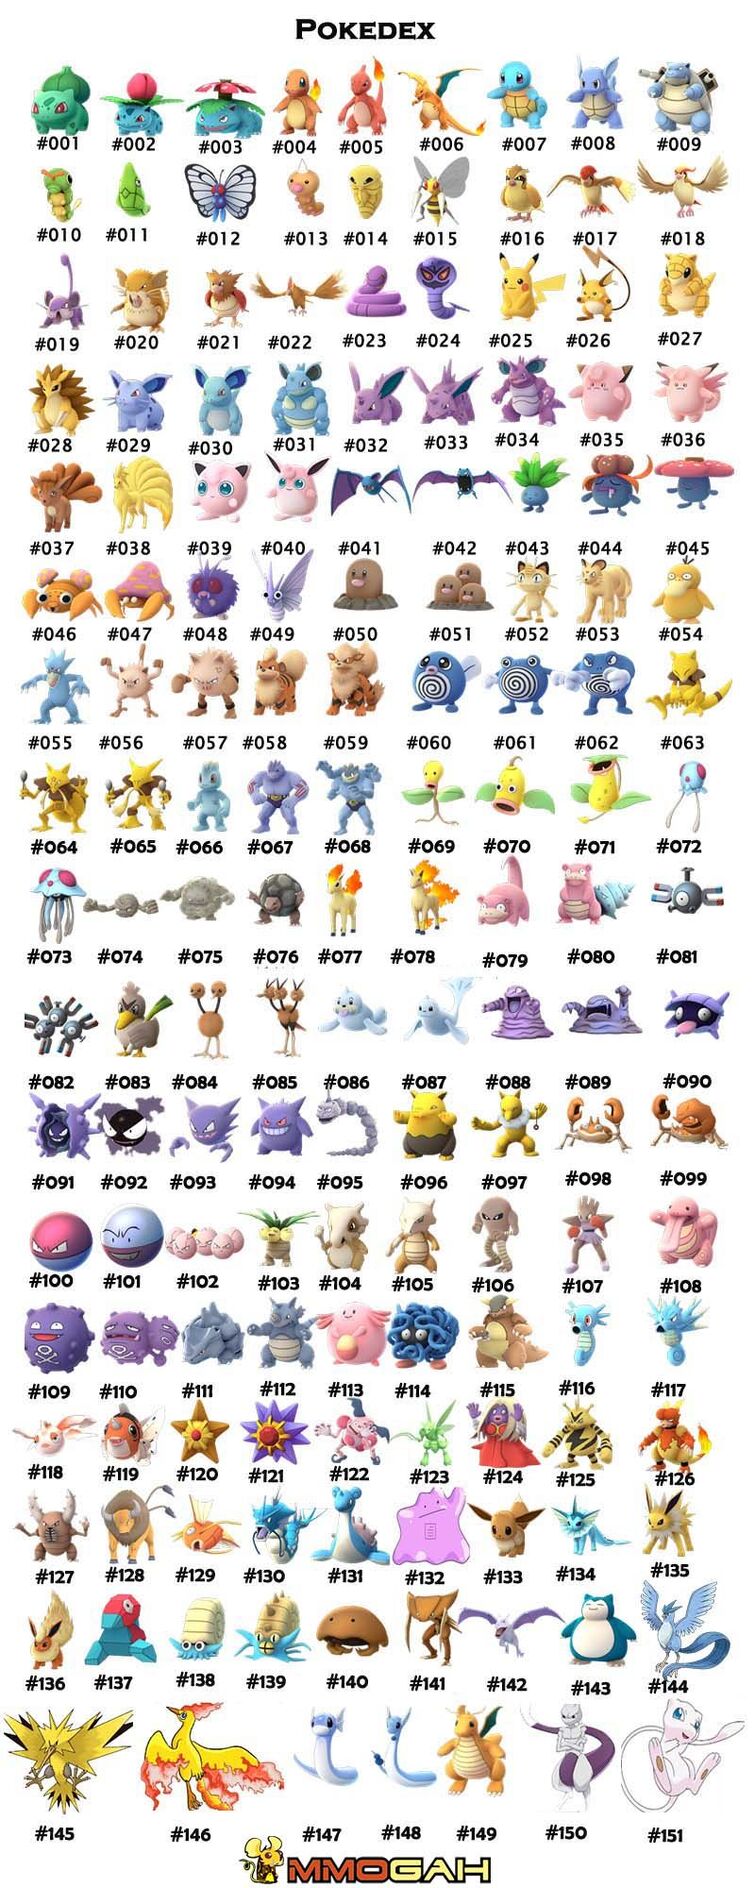 Every Pokémon in 'Pokémon Go